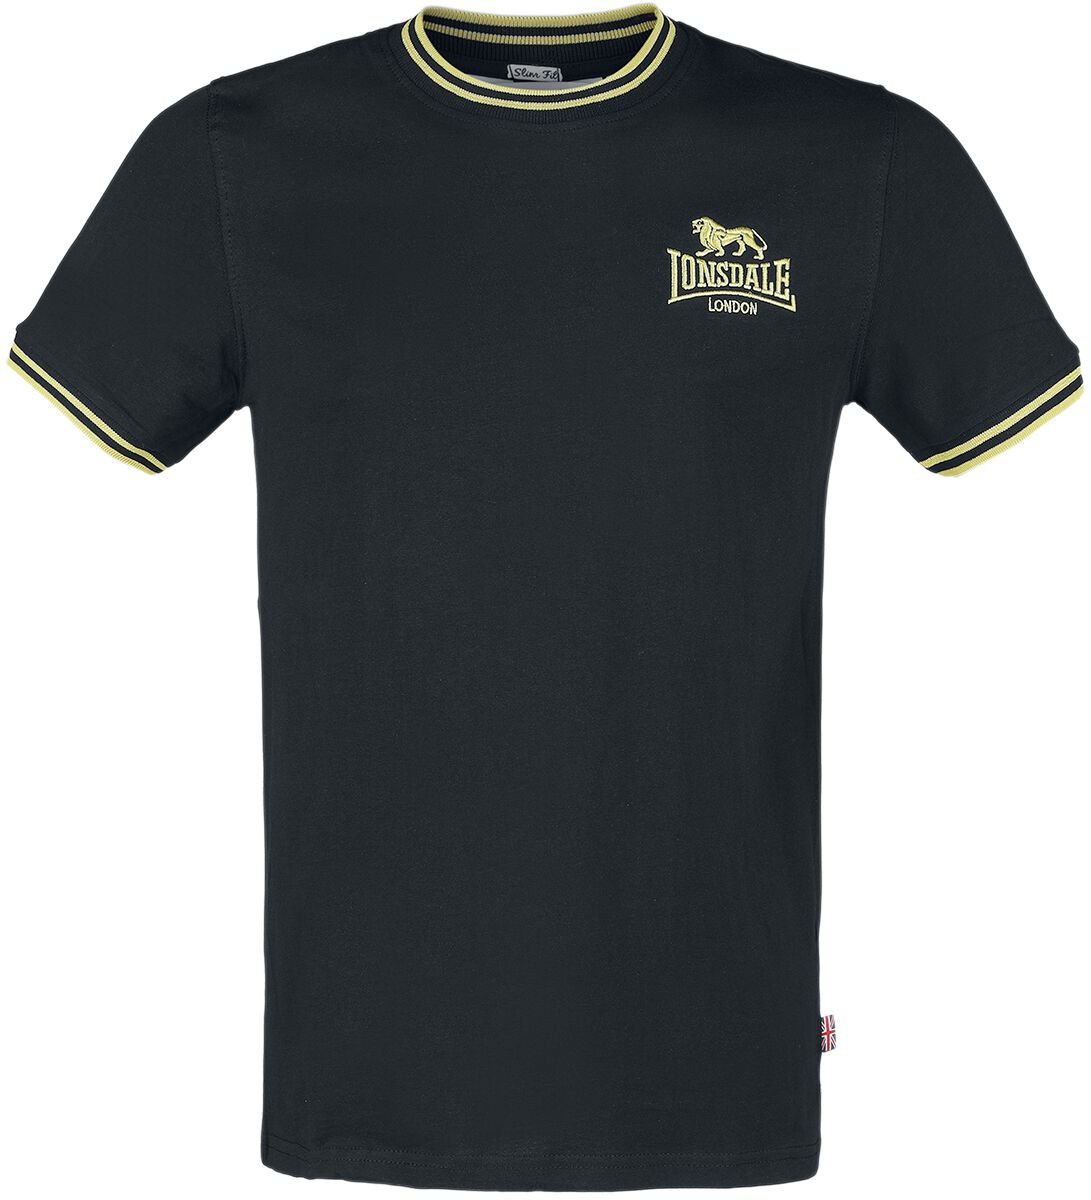 Lonsdale London T-Shirt - DUCANSBY - S bis XXL - für Männer - Größe M - schwarz